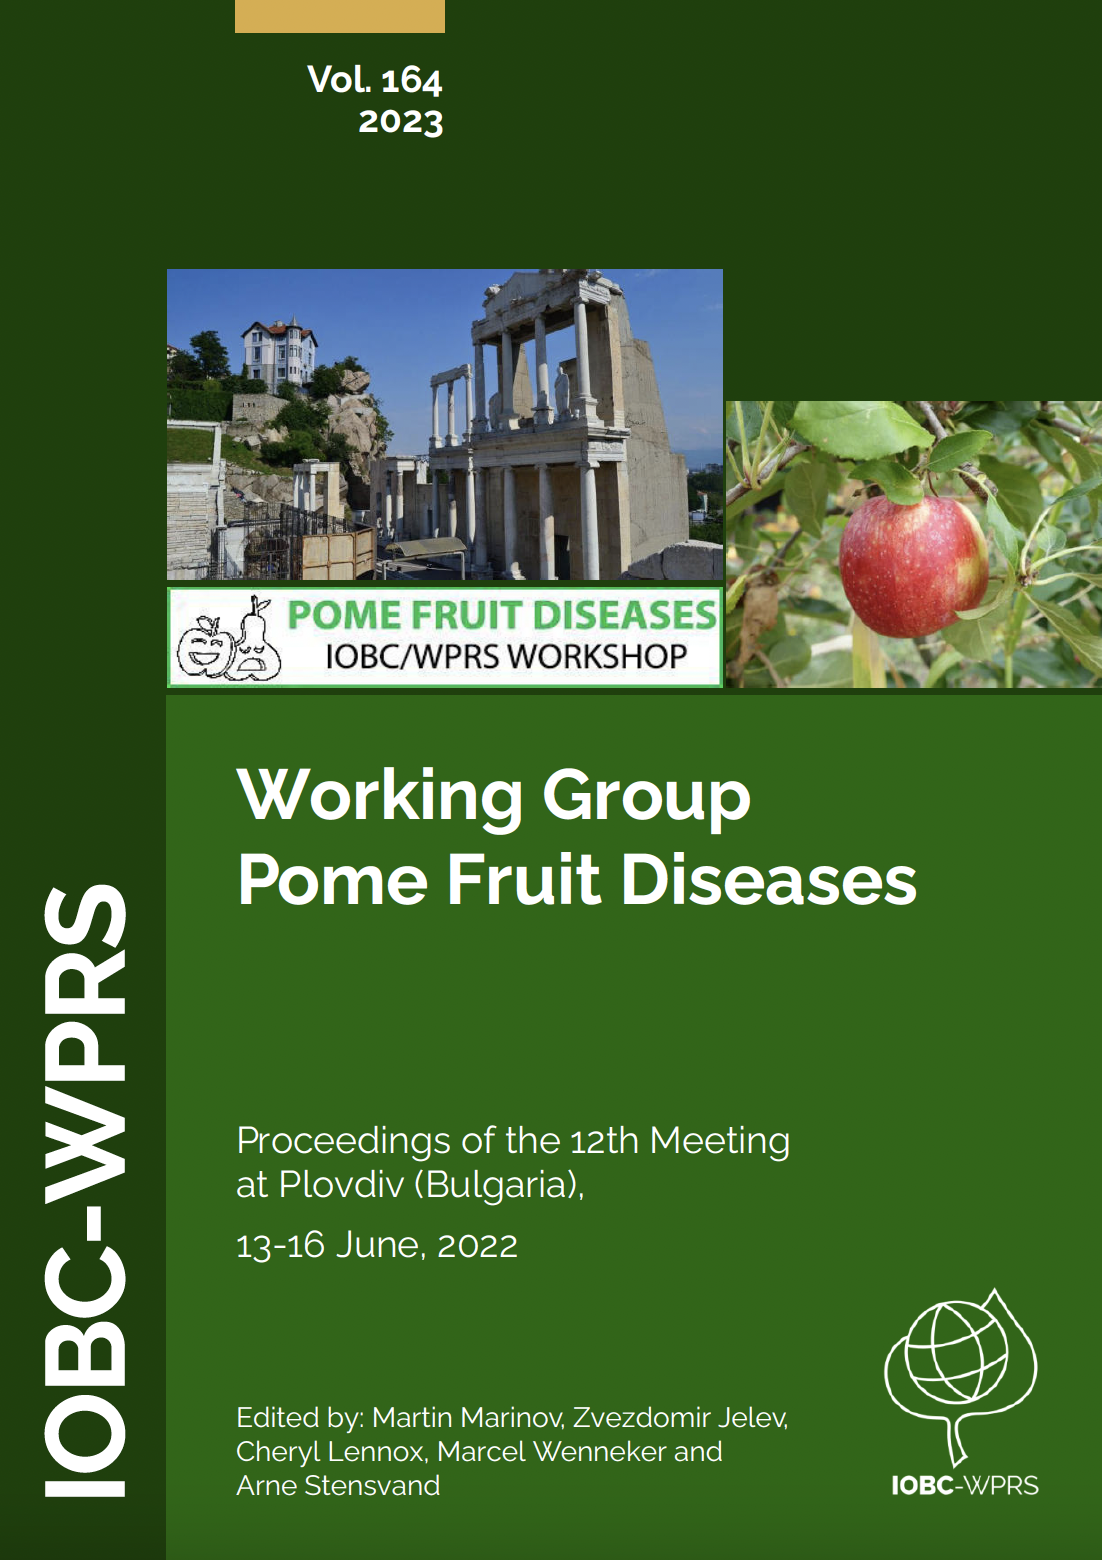 New Bulletin: Pome Fruit Diseases